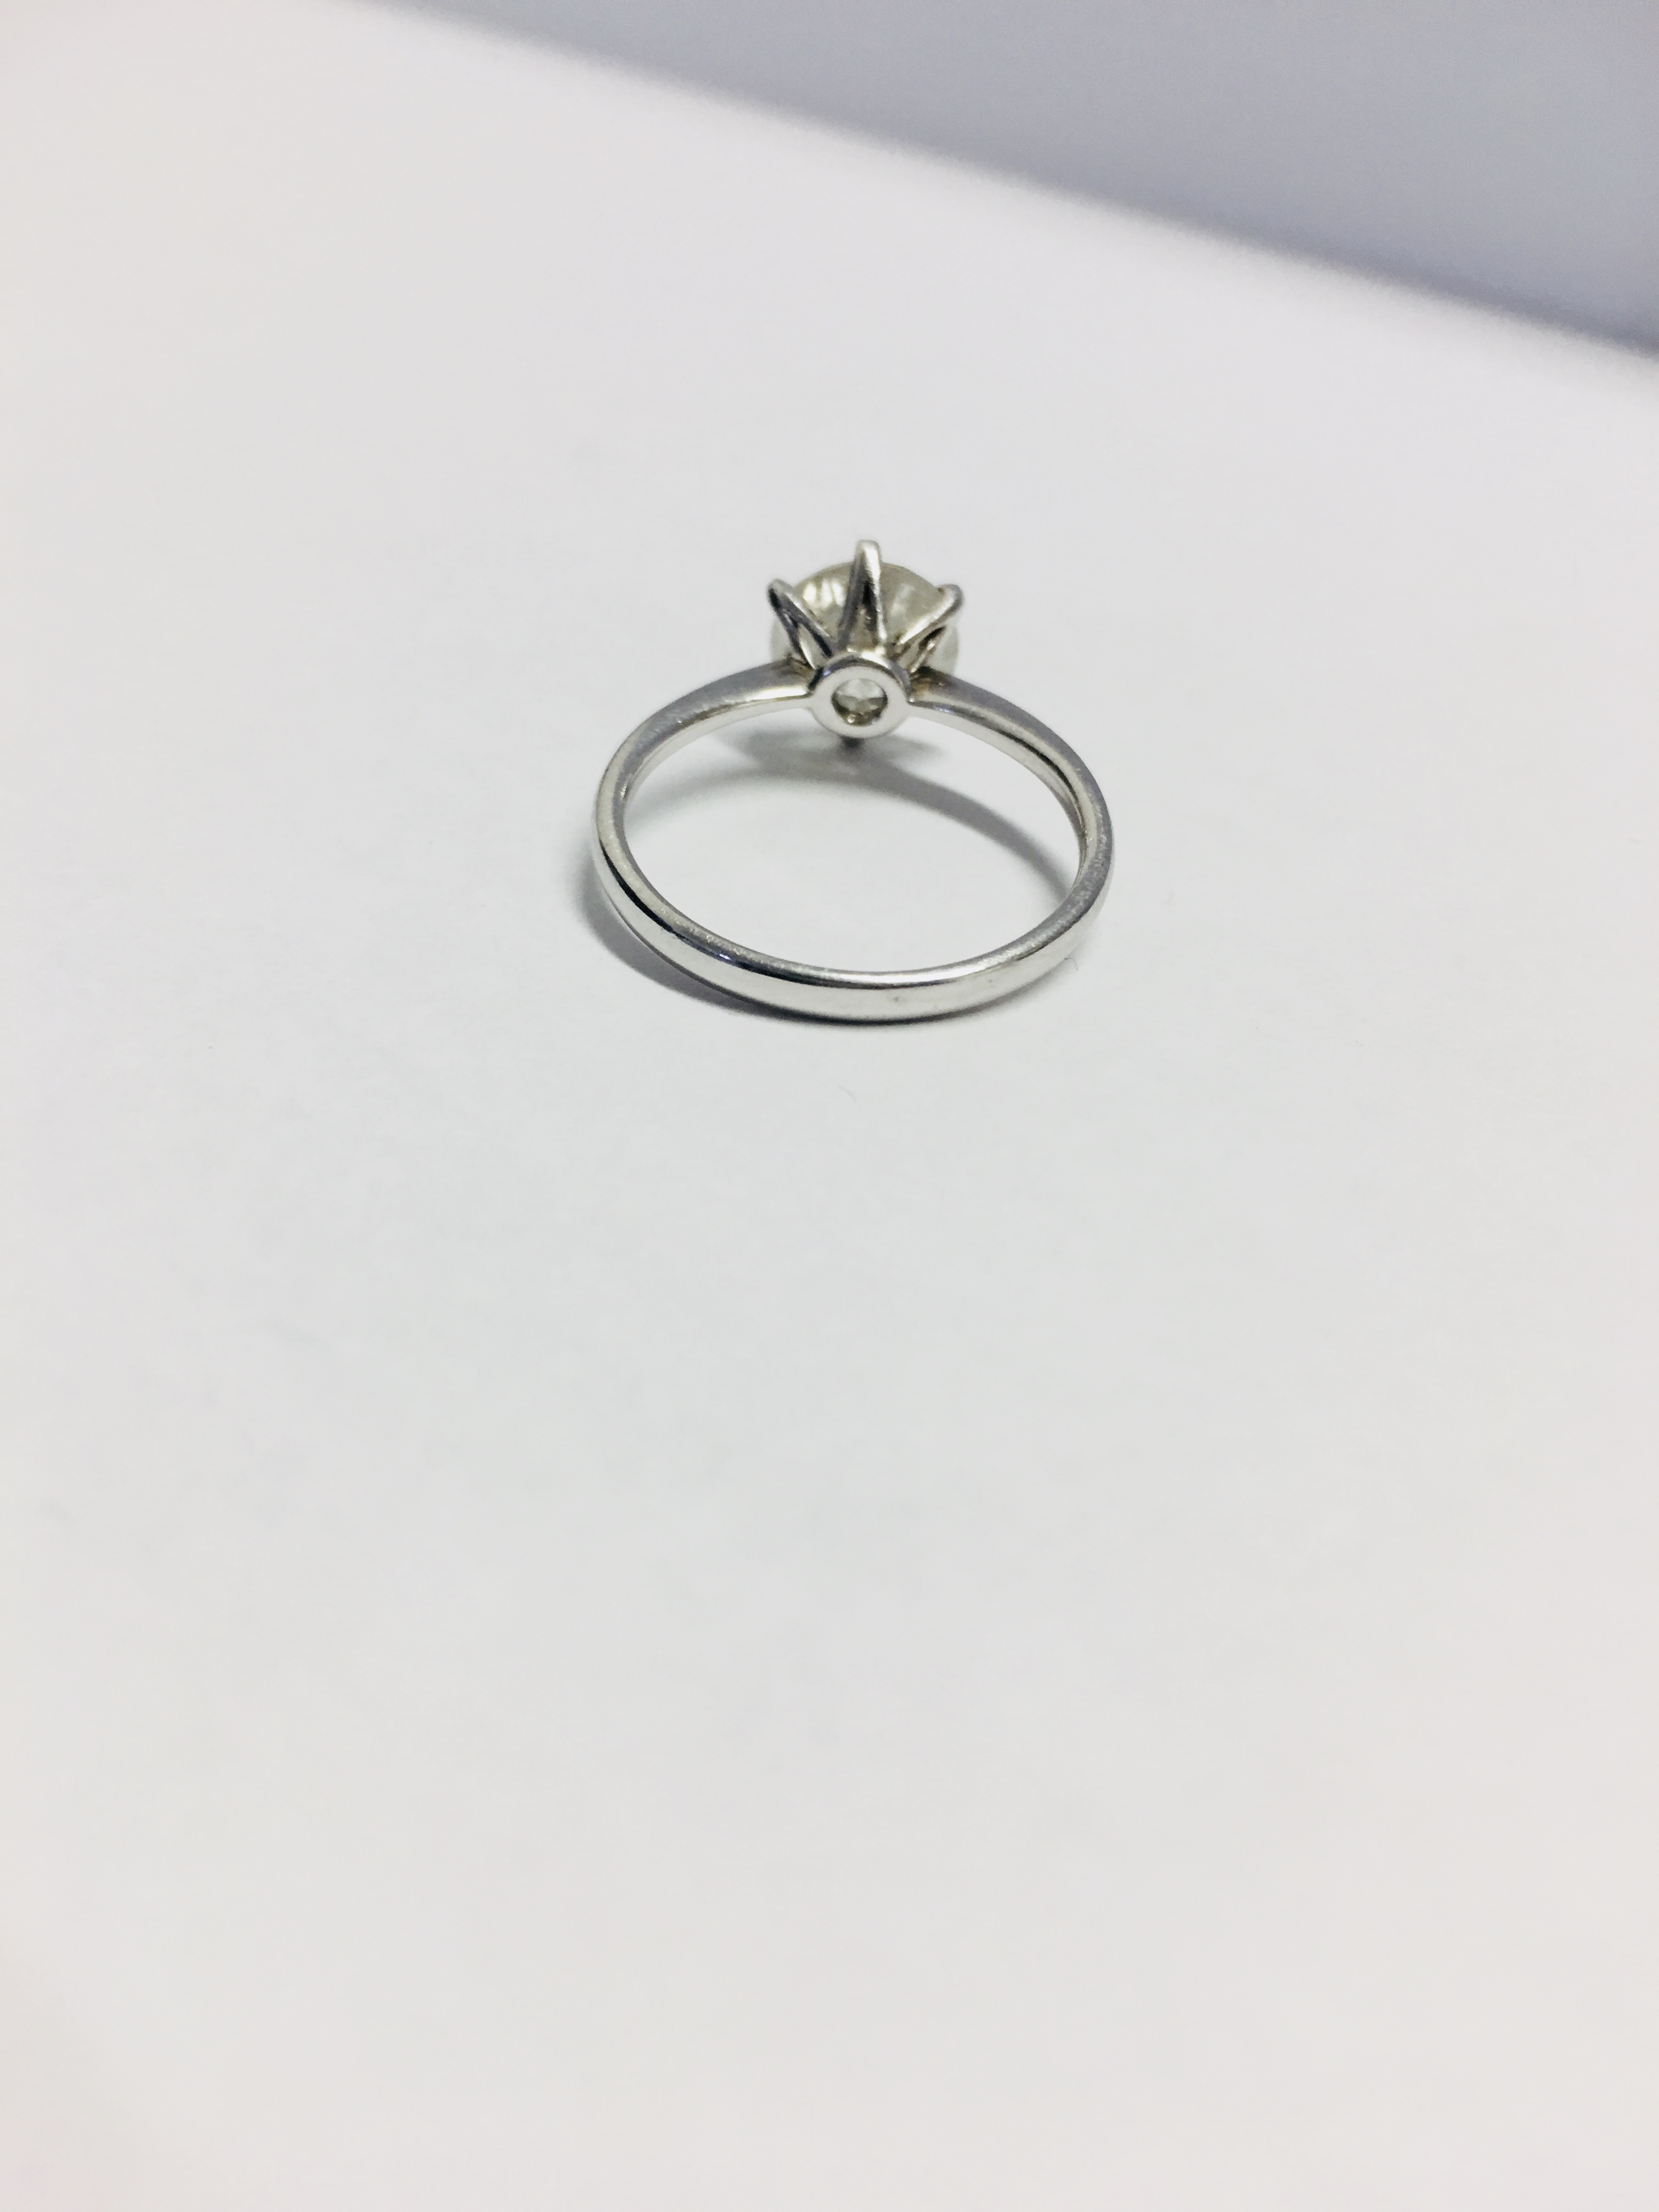 Platinum Diamond Solitaire Ring, - Image 2 of 5